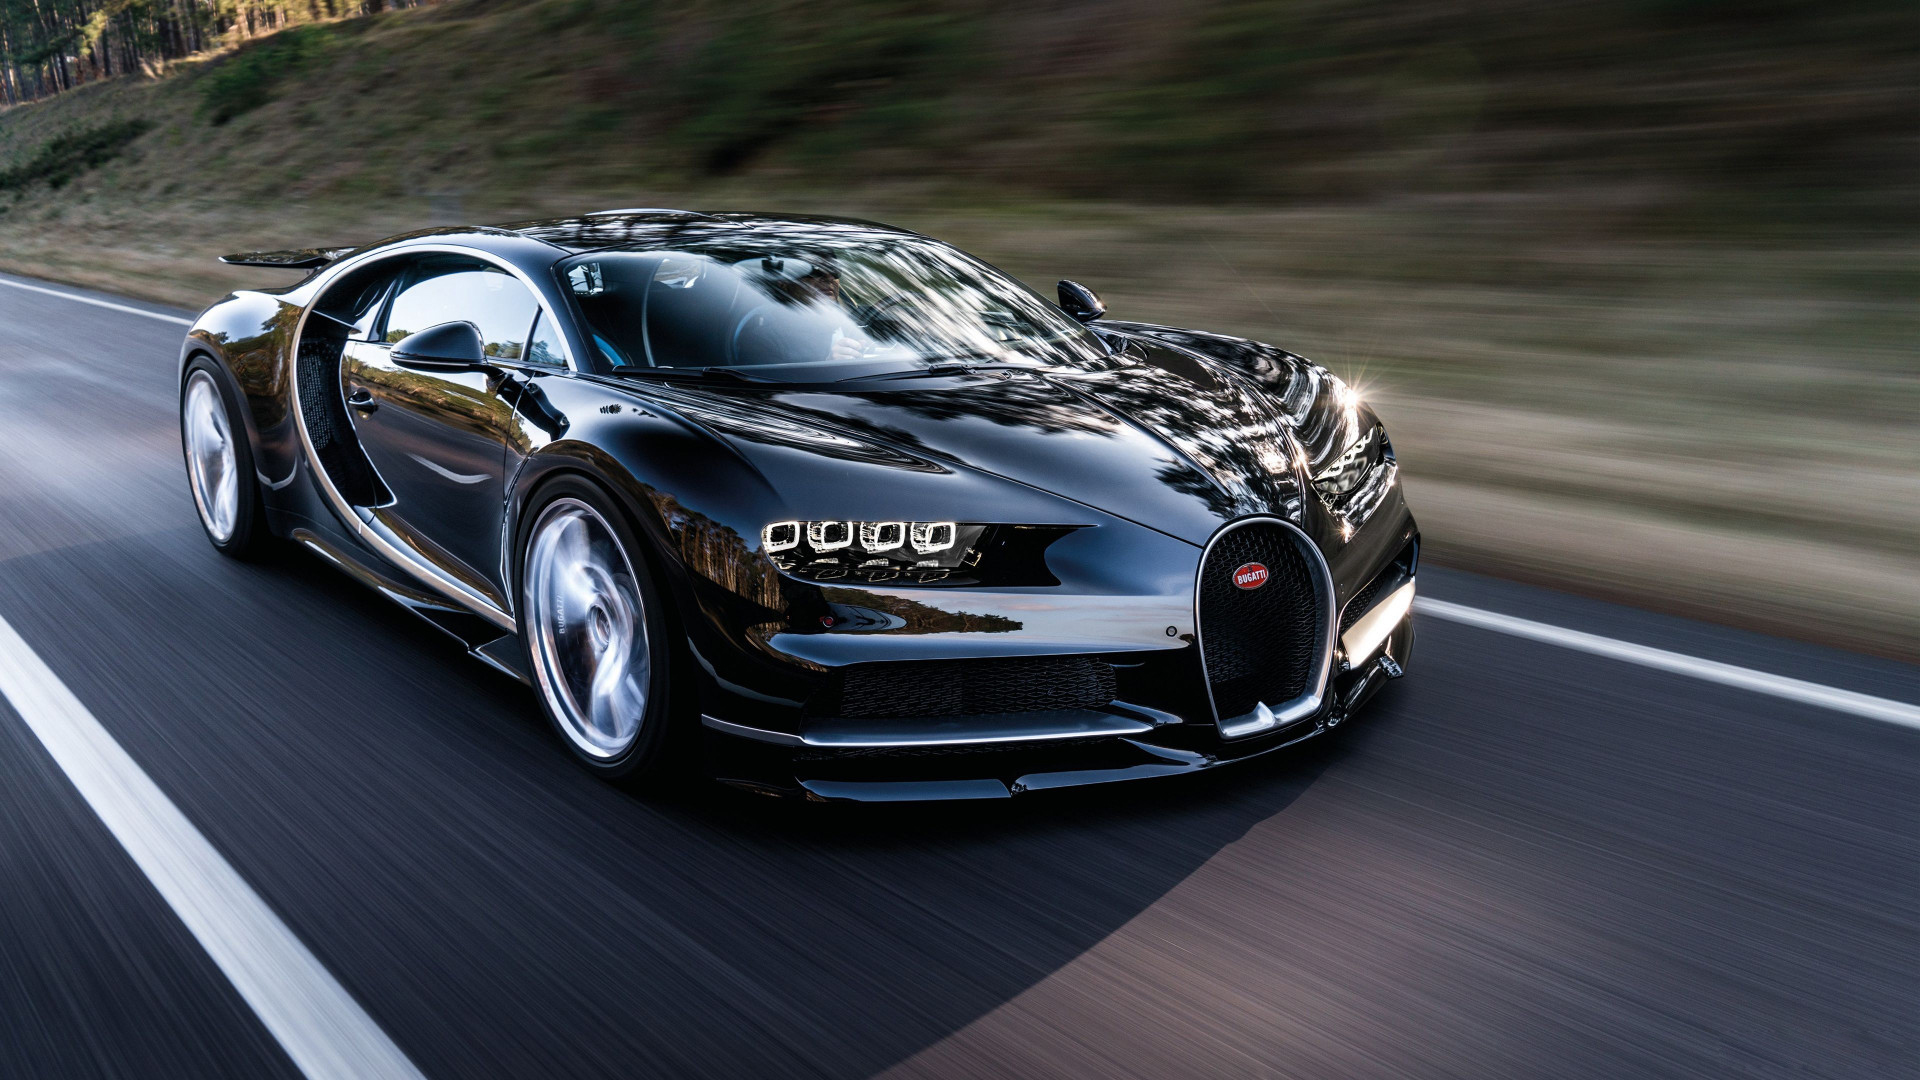 Bugatti là nhà sản xuất ôtô danh tiếng trên thế giới và Bugatti Veyron là một siêu phẩm không thể tin được. Nếu bạn là một người yêu thích siêu xe, hãy xem ngay hình ảnh này. Với kiểu dáng đẹp và tốc độ chóng mặt, Bugatti Veyron đã chinh phục được rất nhiều người trên toàn thế giới.